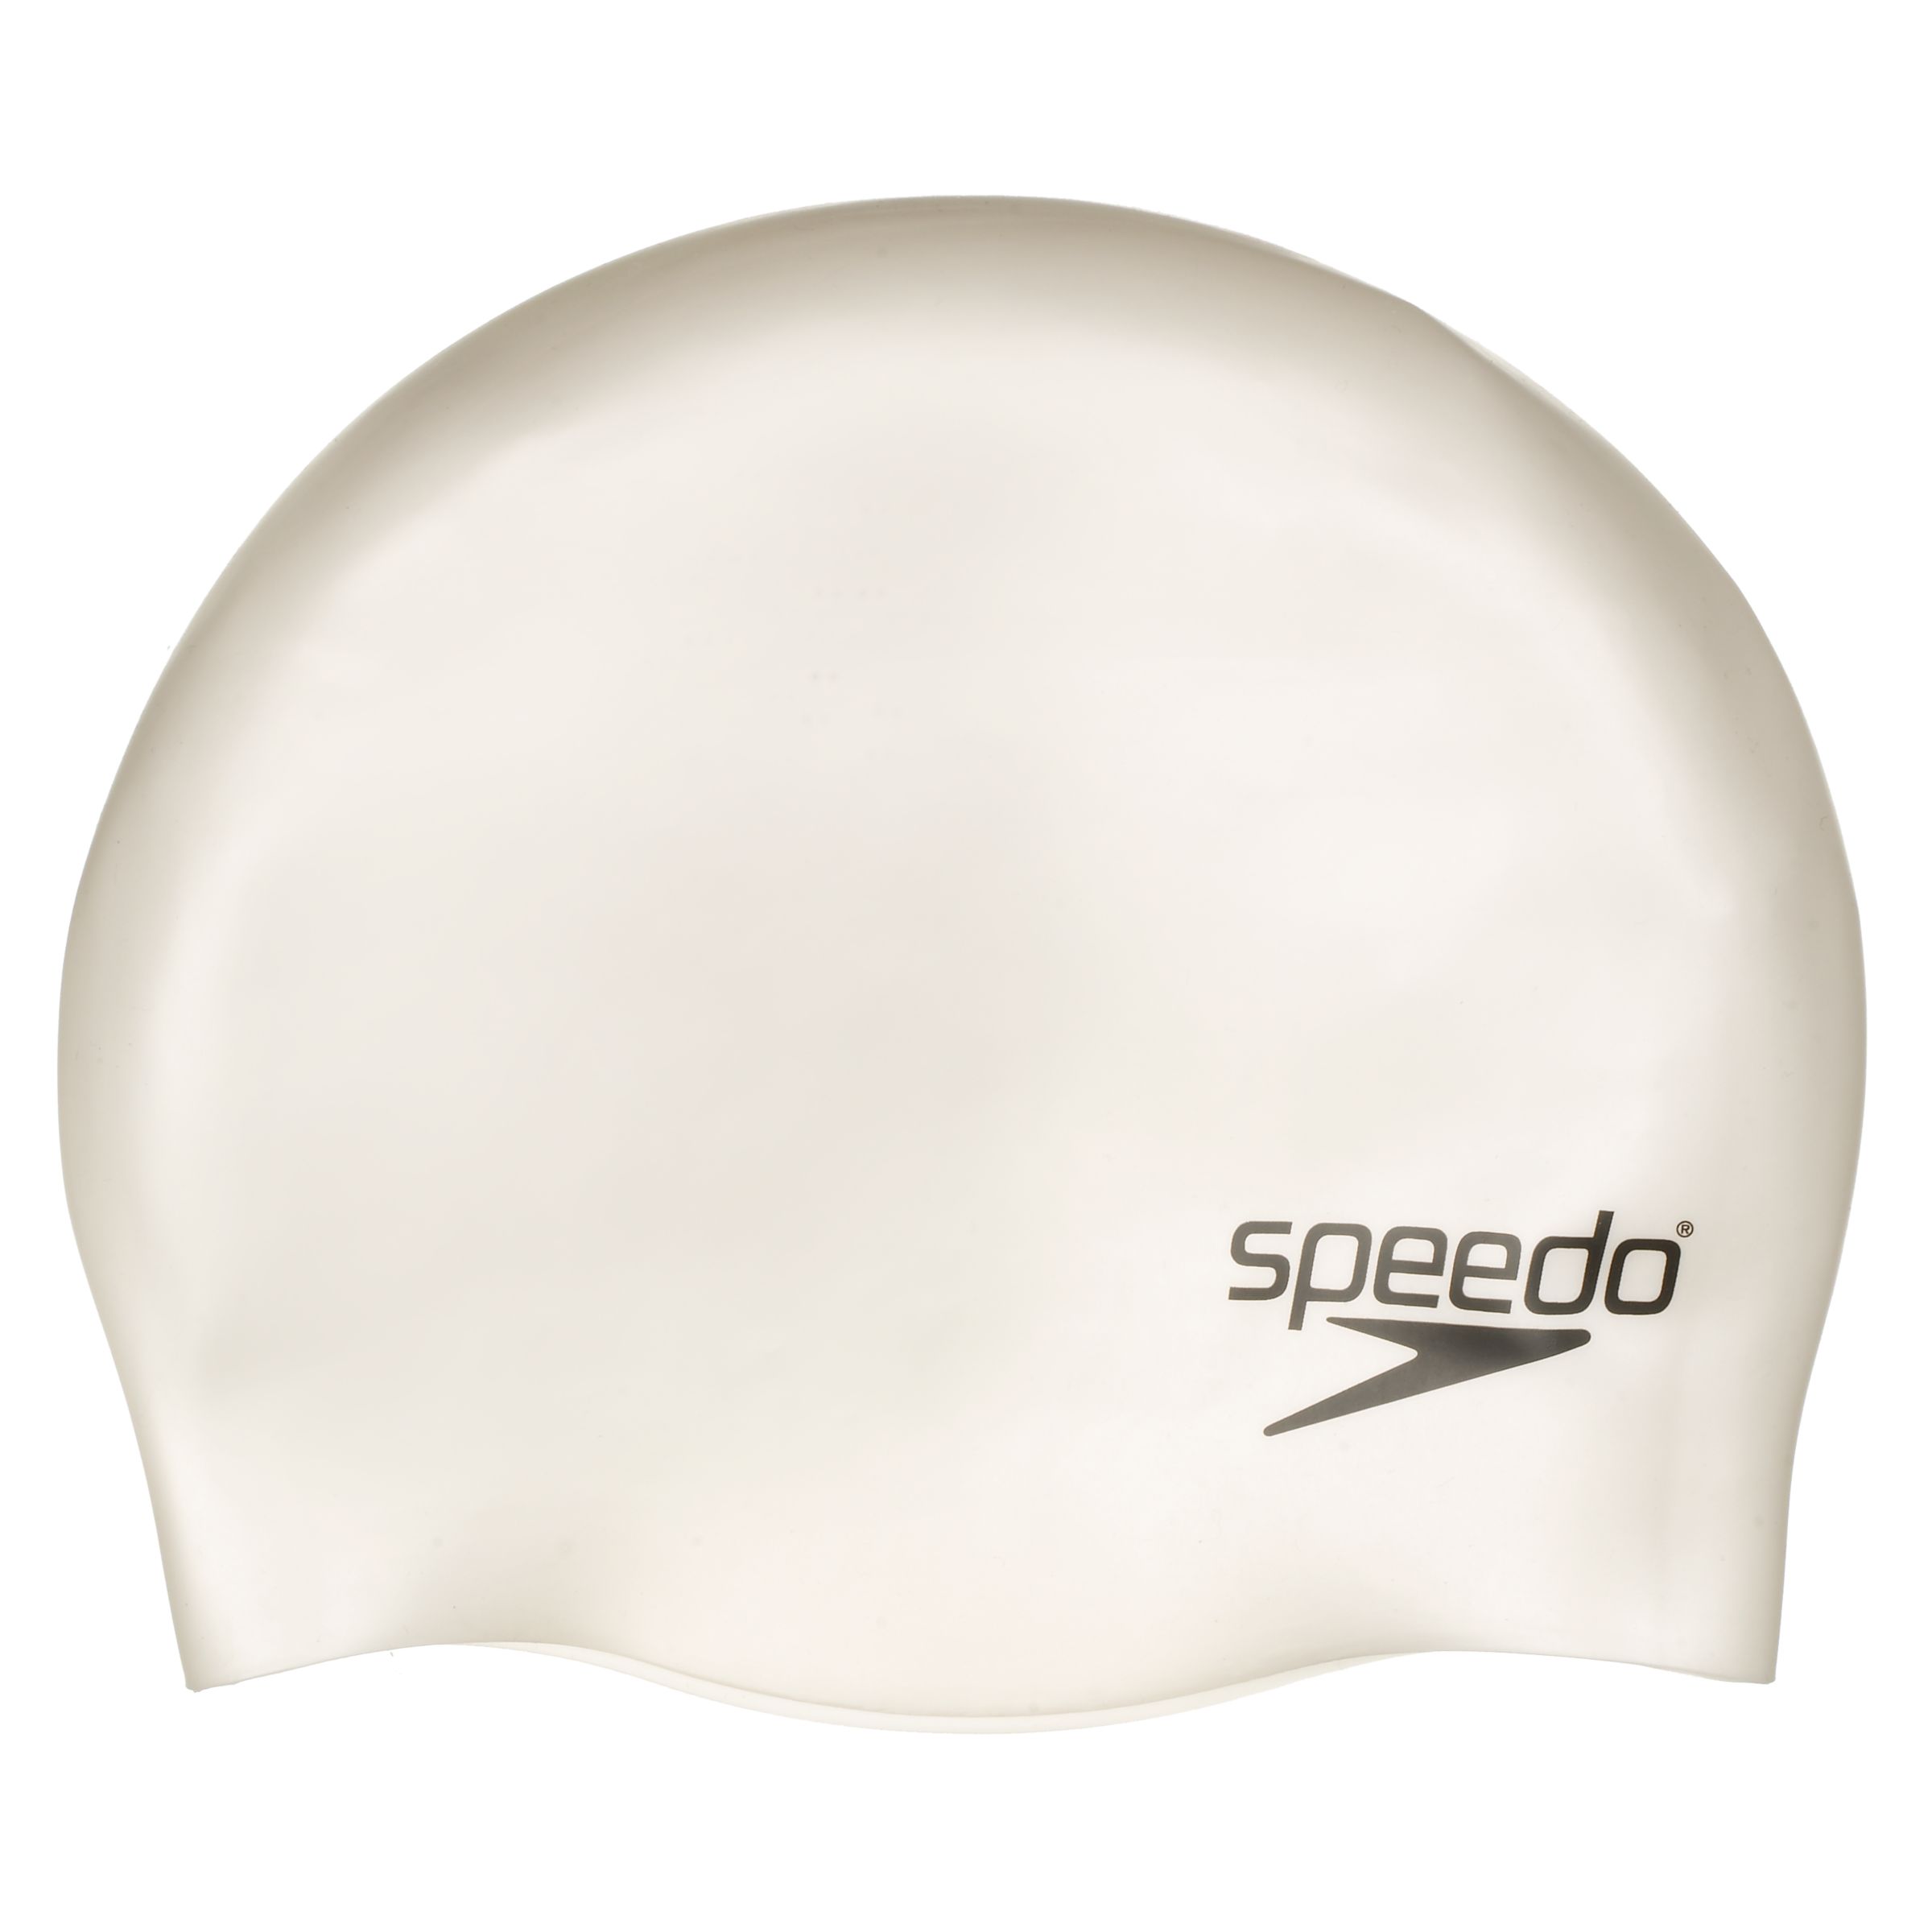 Details about   Speedo Solid Silicone Swim Cap JUNIOR White NEW Lightweight Won't Snag 